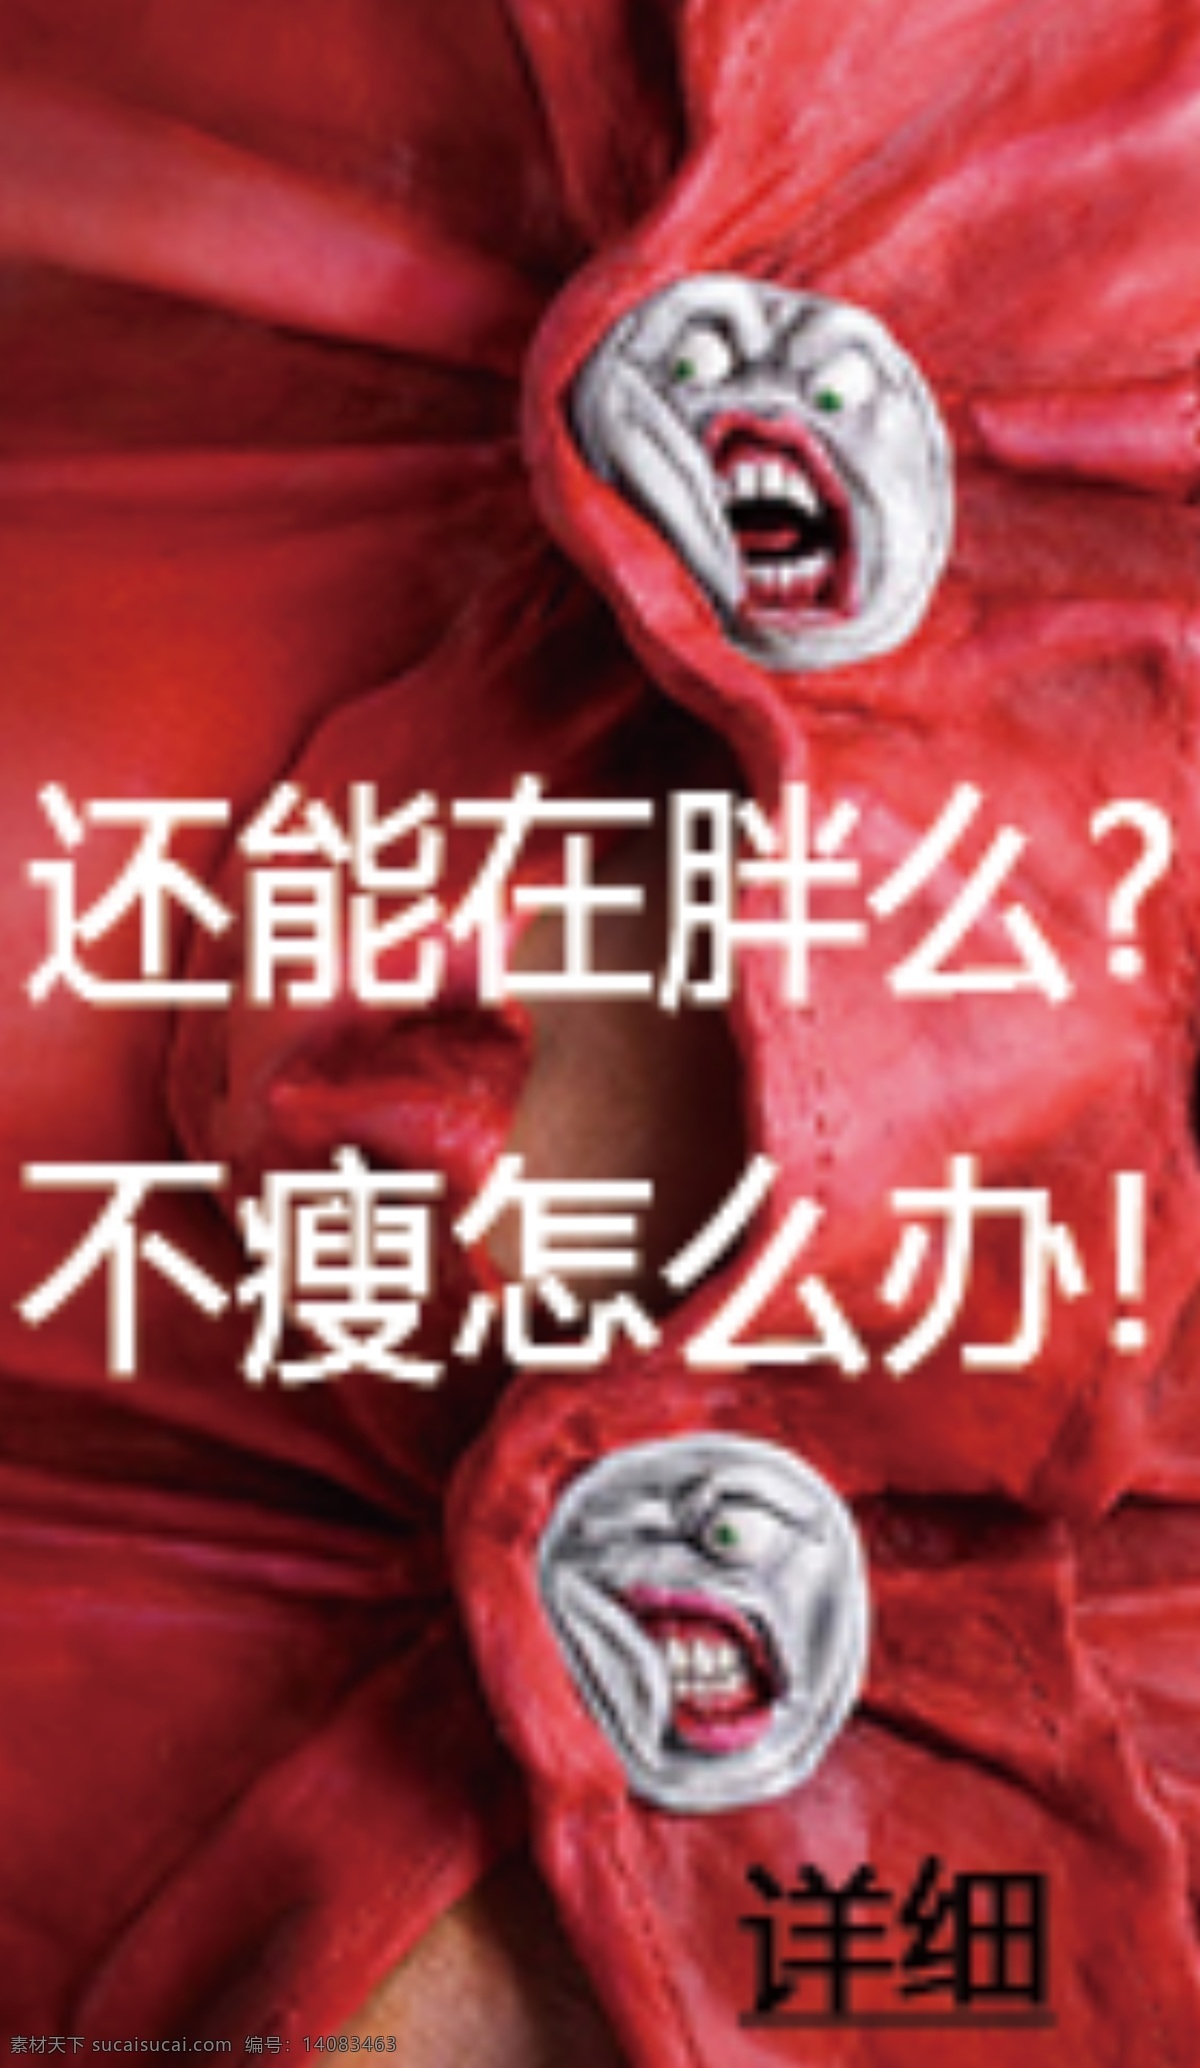 减肥 胖 瘦 扣子 衣服 红色 网页小广告 中文模版 网页模板 源文件